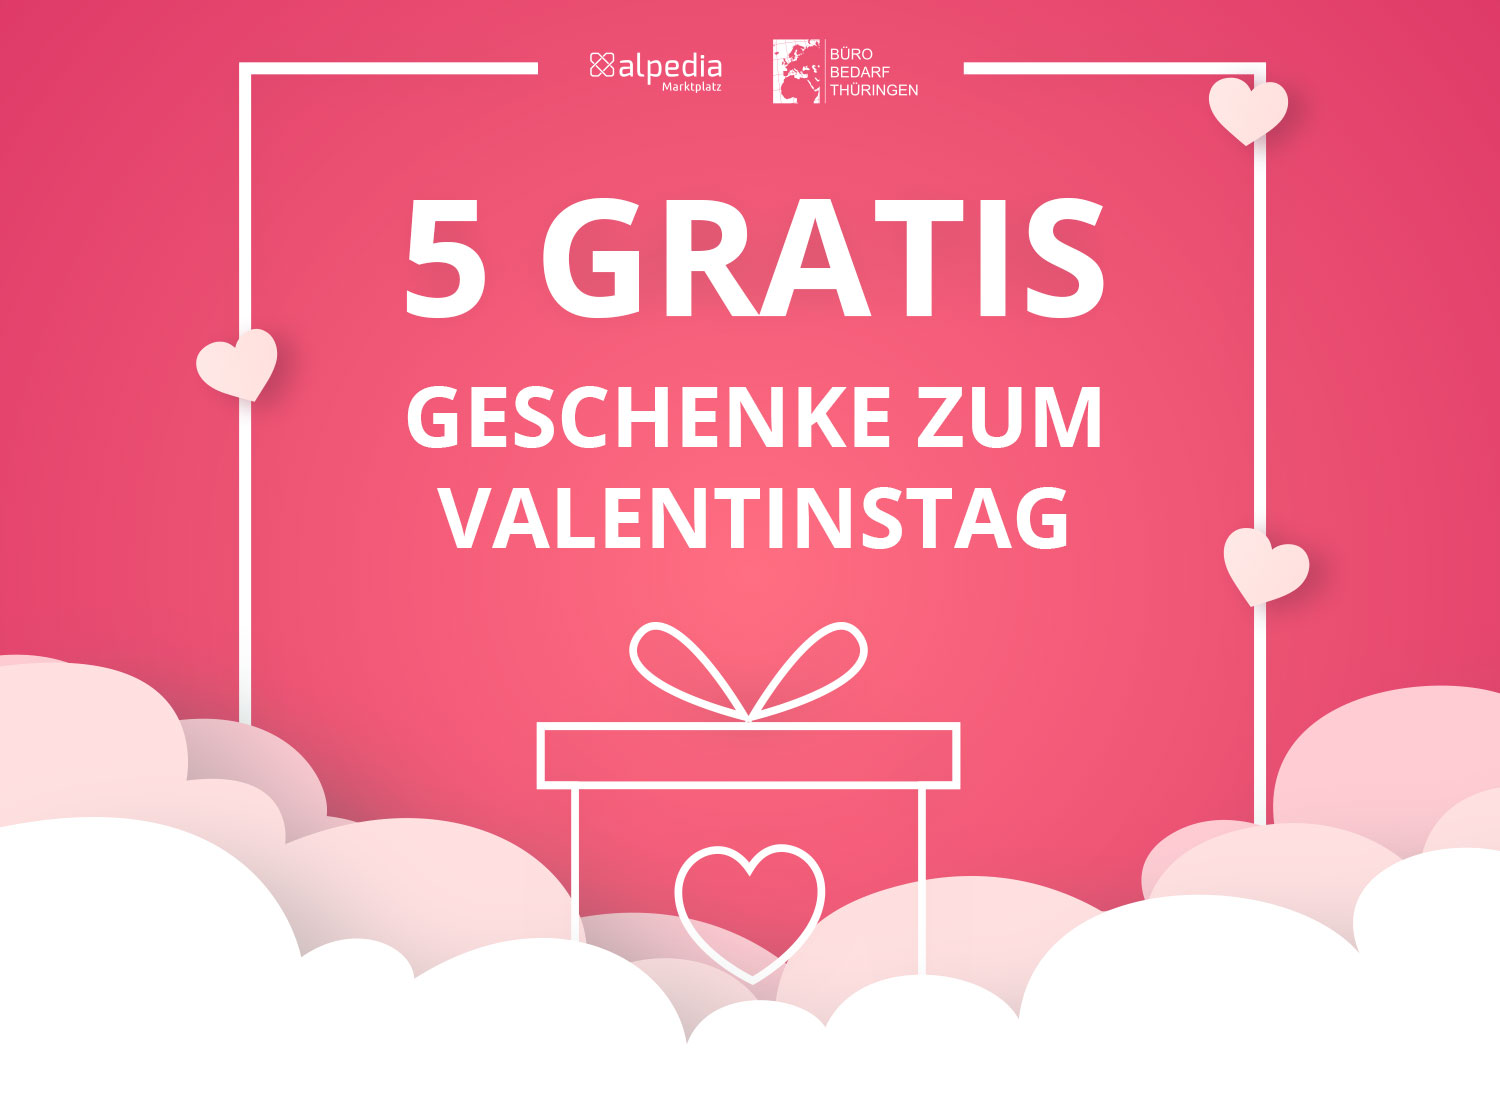 Valentinstag-Angebote 2021 – mit 5 Gratis-Geschenken - Bürobedarf Thüringen